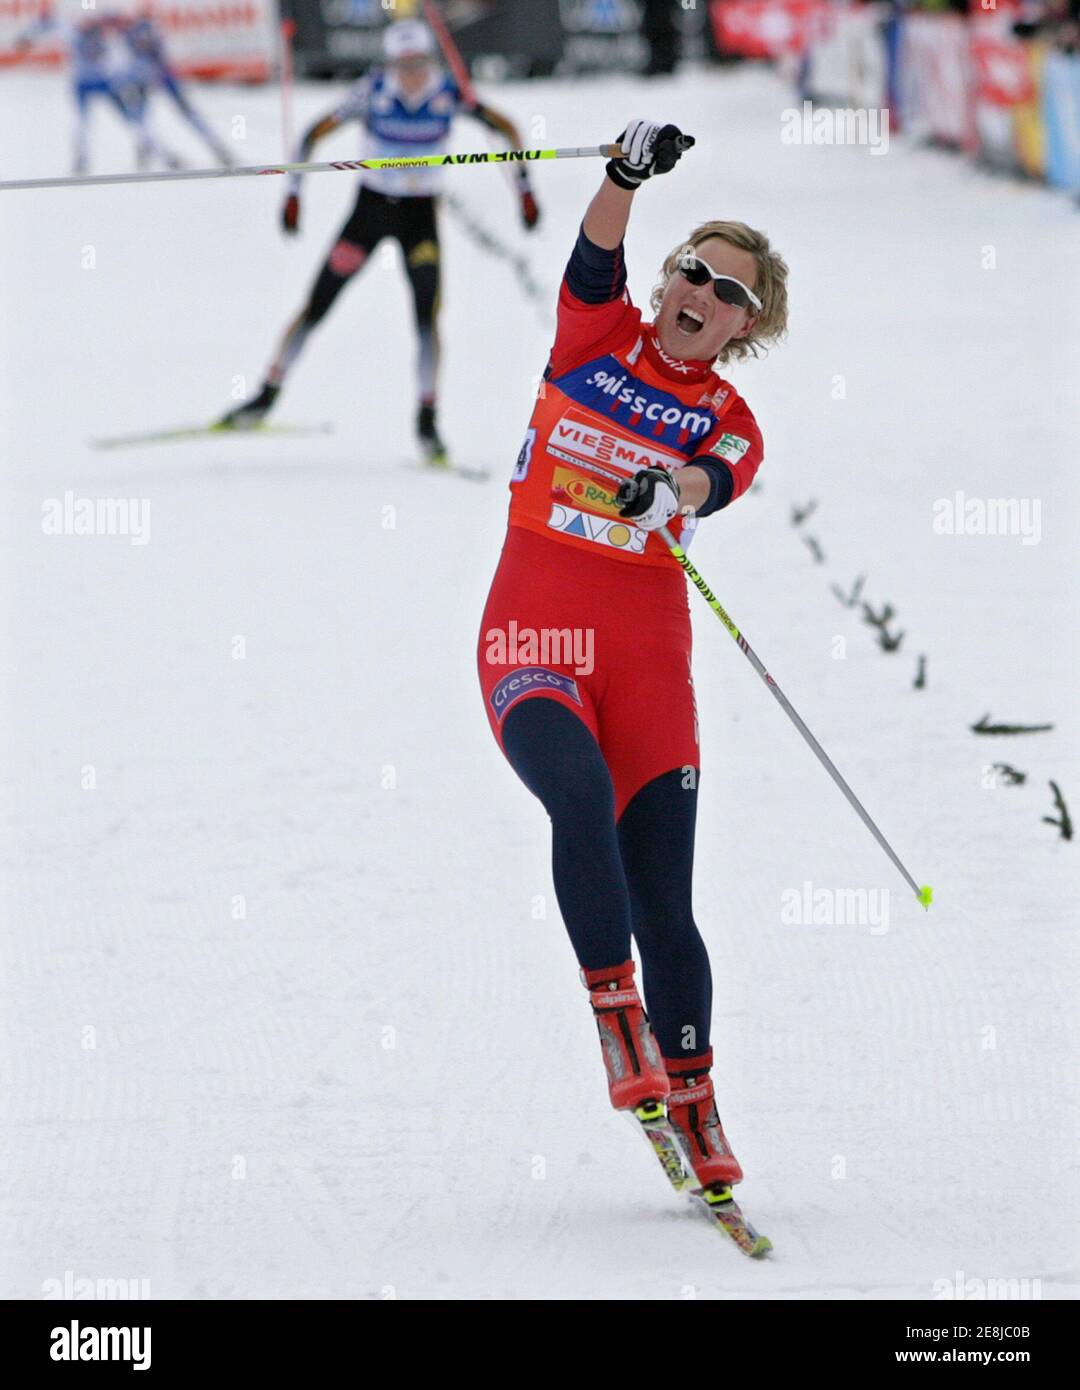 Vibeke Skofterud de Noruega cruza la línea de meta por delante de Stefanie Bohler de Alemania durante el relé femenino de 4 x 5 km de esquí nórdico Copa Mundial de evento de fondo en Davos 9 de diciembre de 2007. REUTERS/Miro Kuzmanovic (SUIZA) Foto de stock